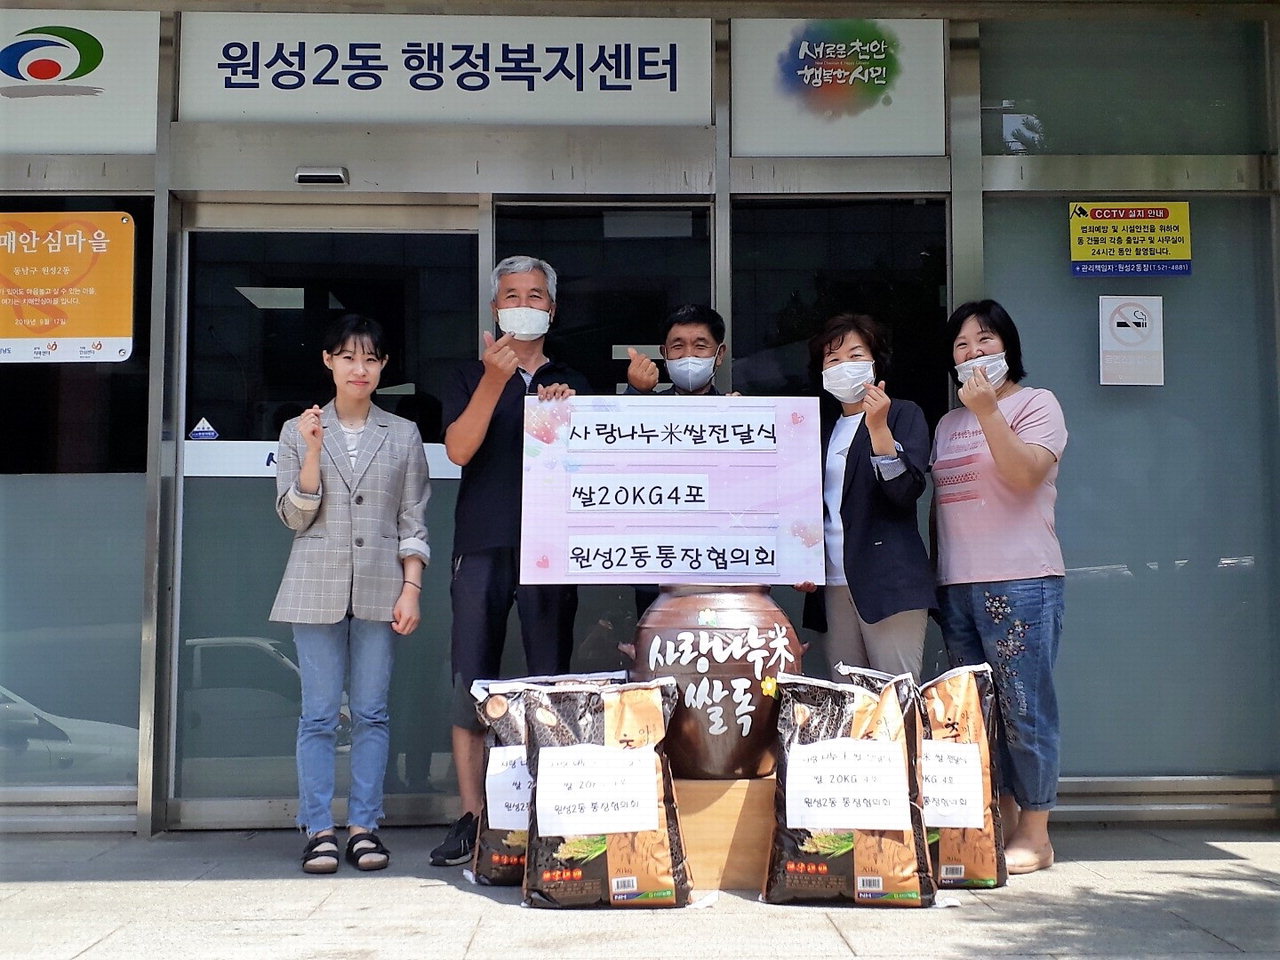 원성2동에서 ‘사랑나누미 쌀독’ 쌀 나눔 기부 릴레이사업을 펼치고 있다./천안시 제공